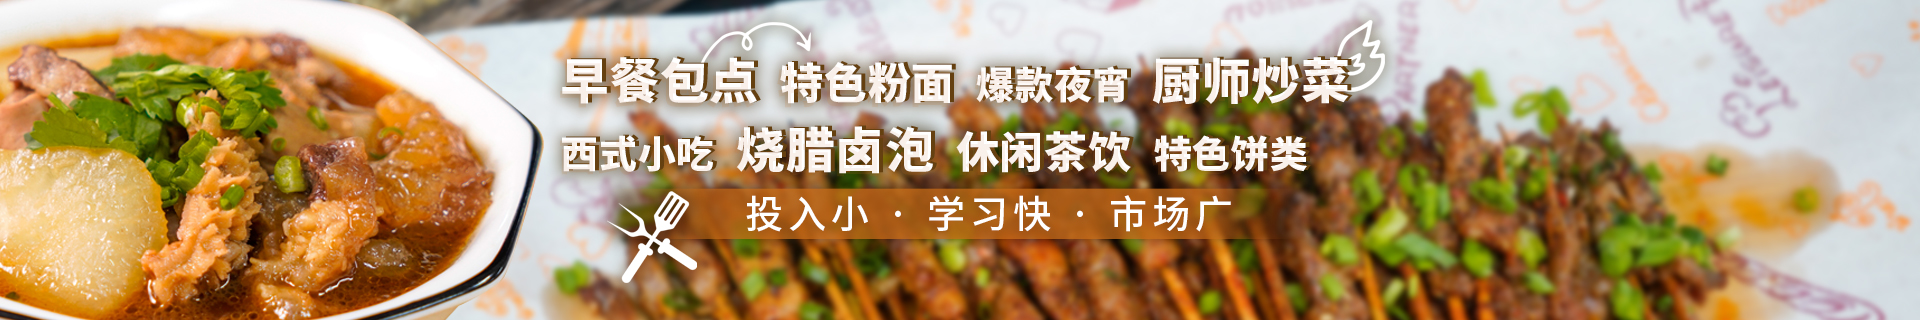 广州新塘镇食为先小吃培训中心